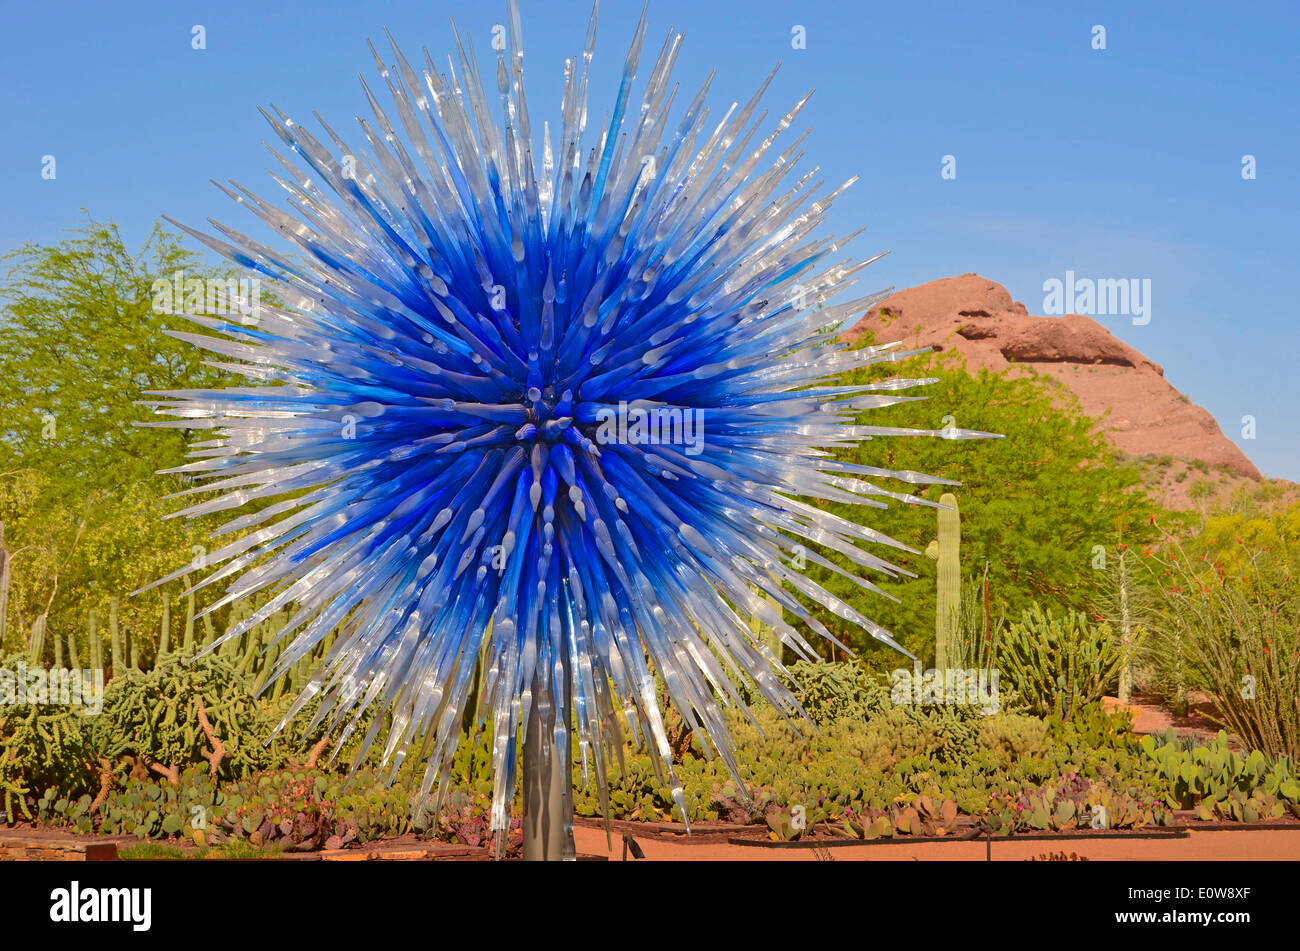 El legendario artista de vidrio Dale Chihuly expone su obra en el Desert Botanical Gardens en Phoenix, Arizona, EE.UU. durante 2014. Foto de stock